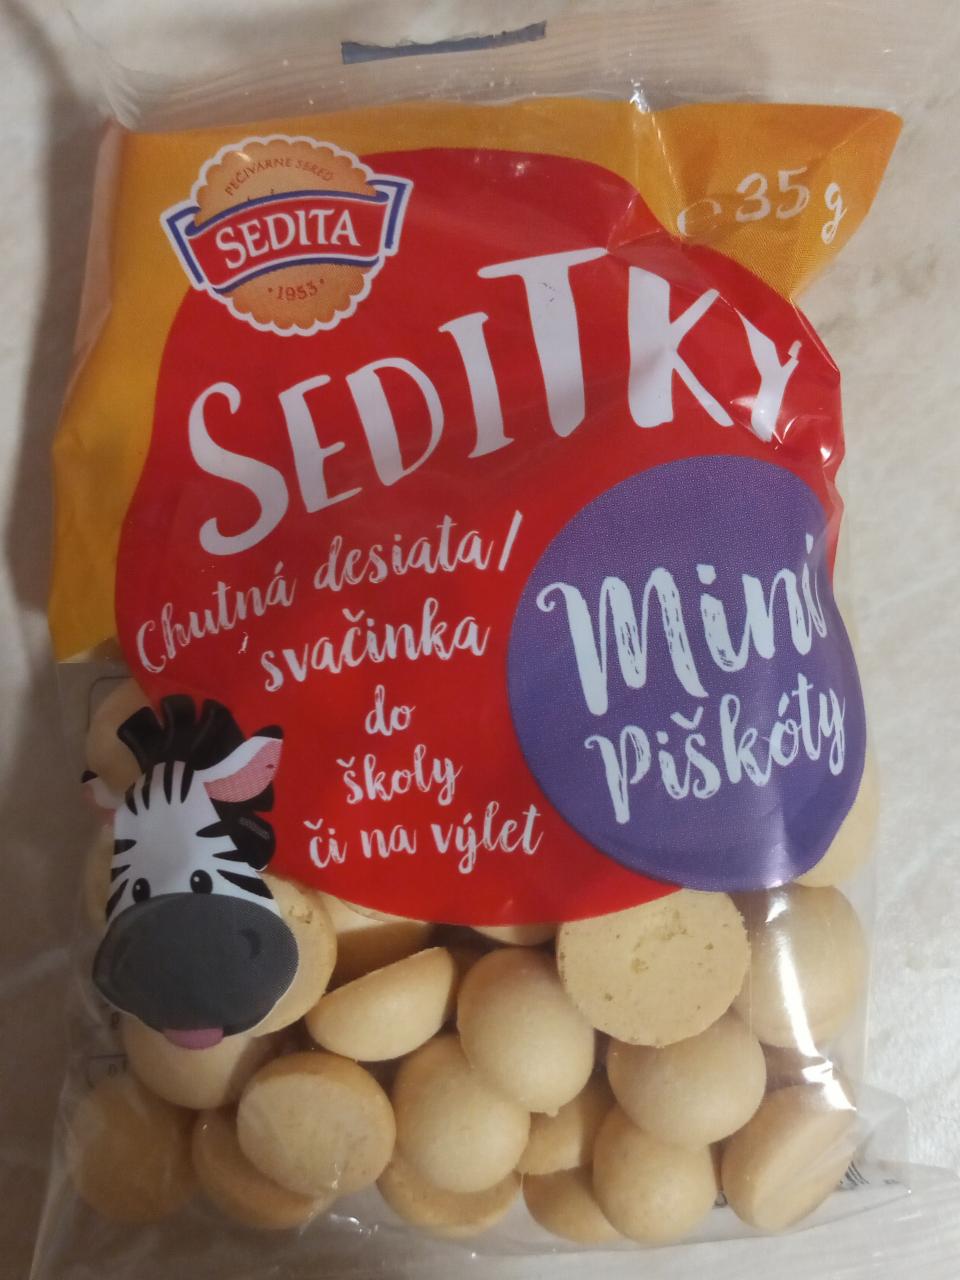 Fotografie - Seditky Mini piškoty Sedita